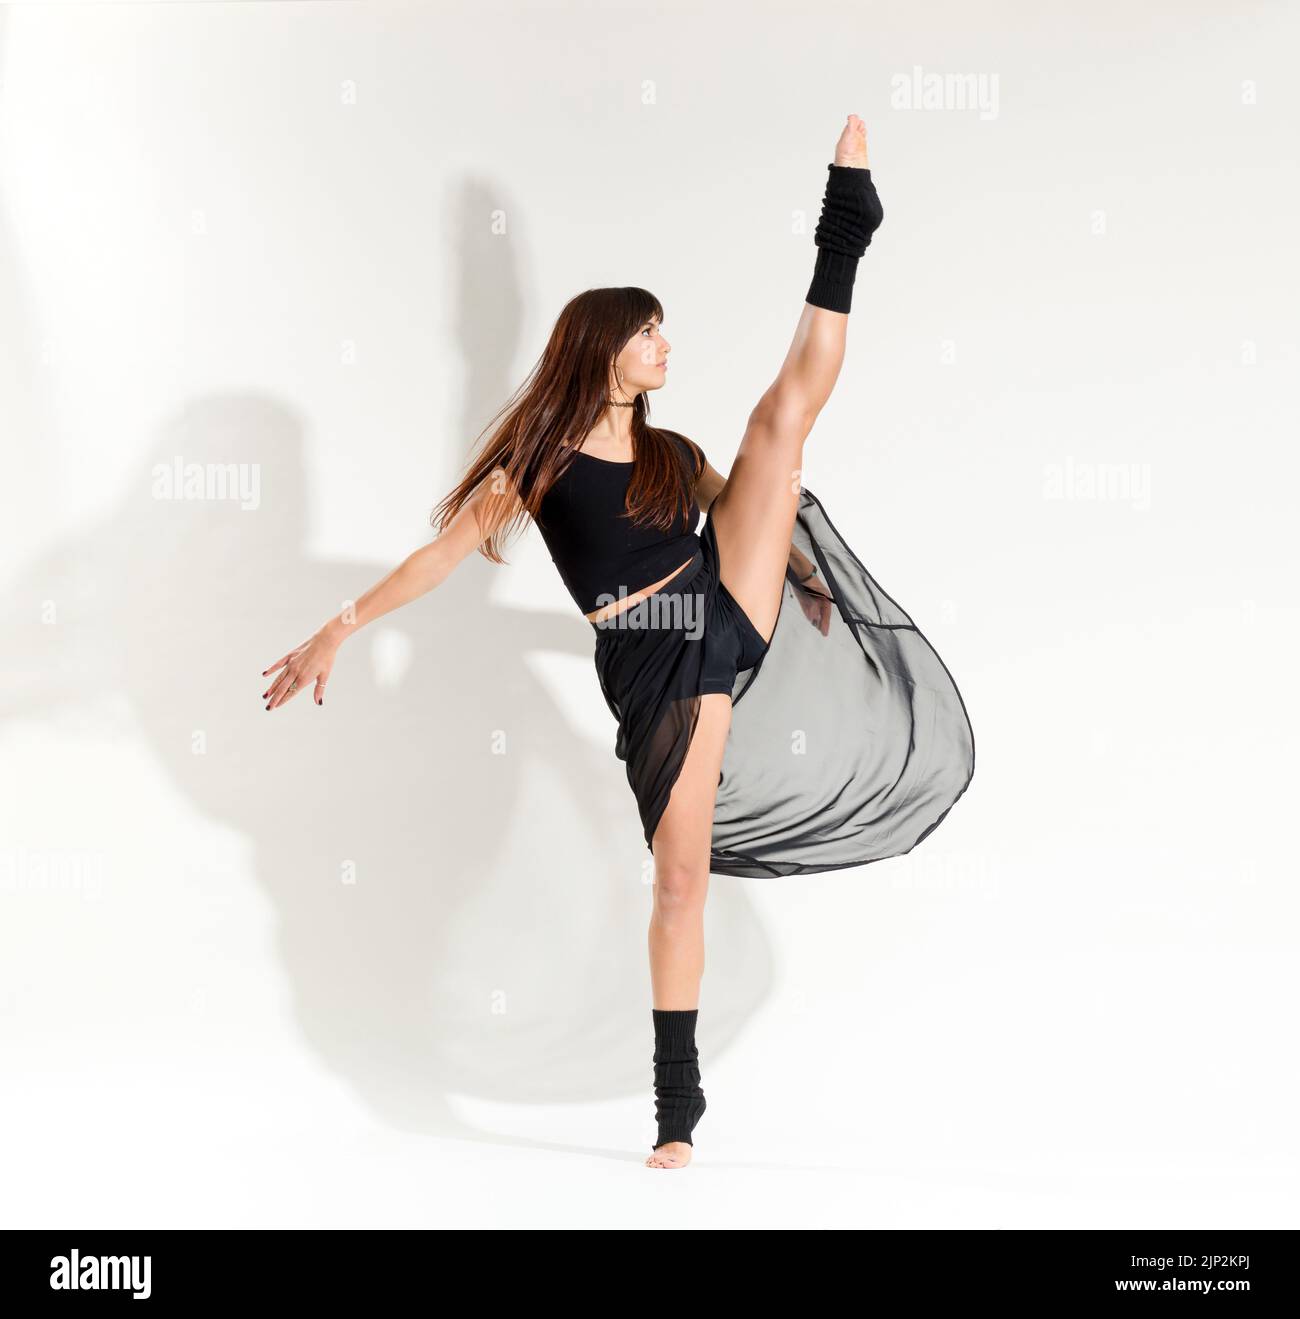 danseuse, ballet, developpe, ballet position, danseurs, ballets Banque D'Images